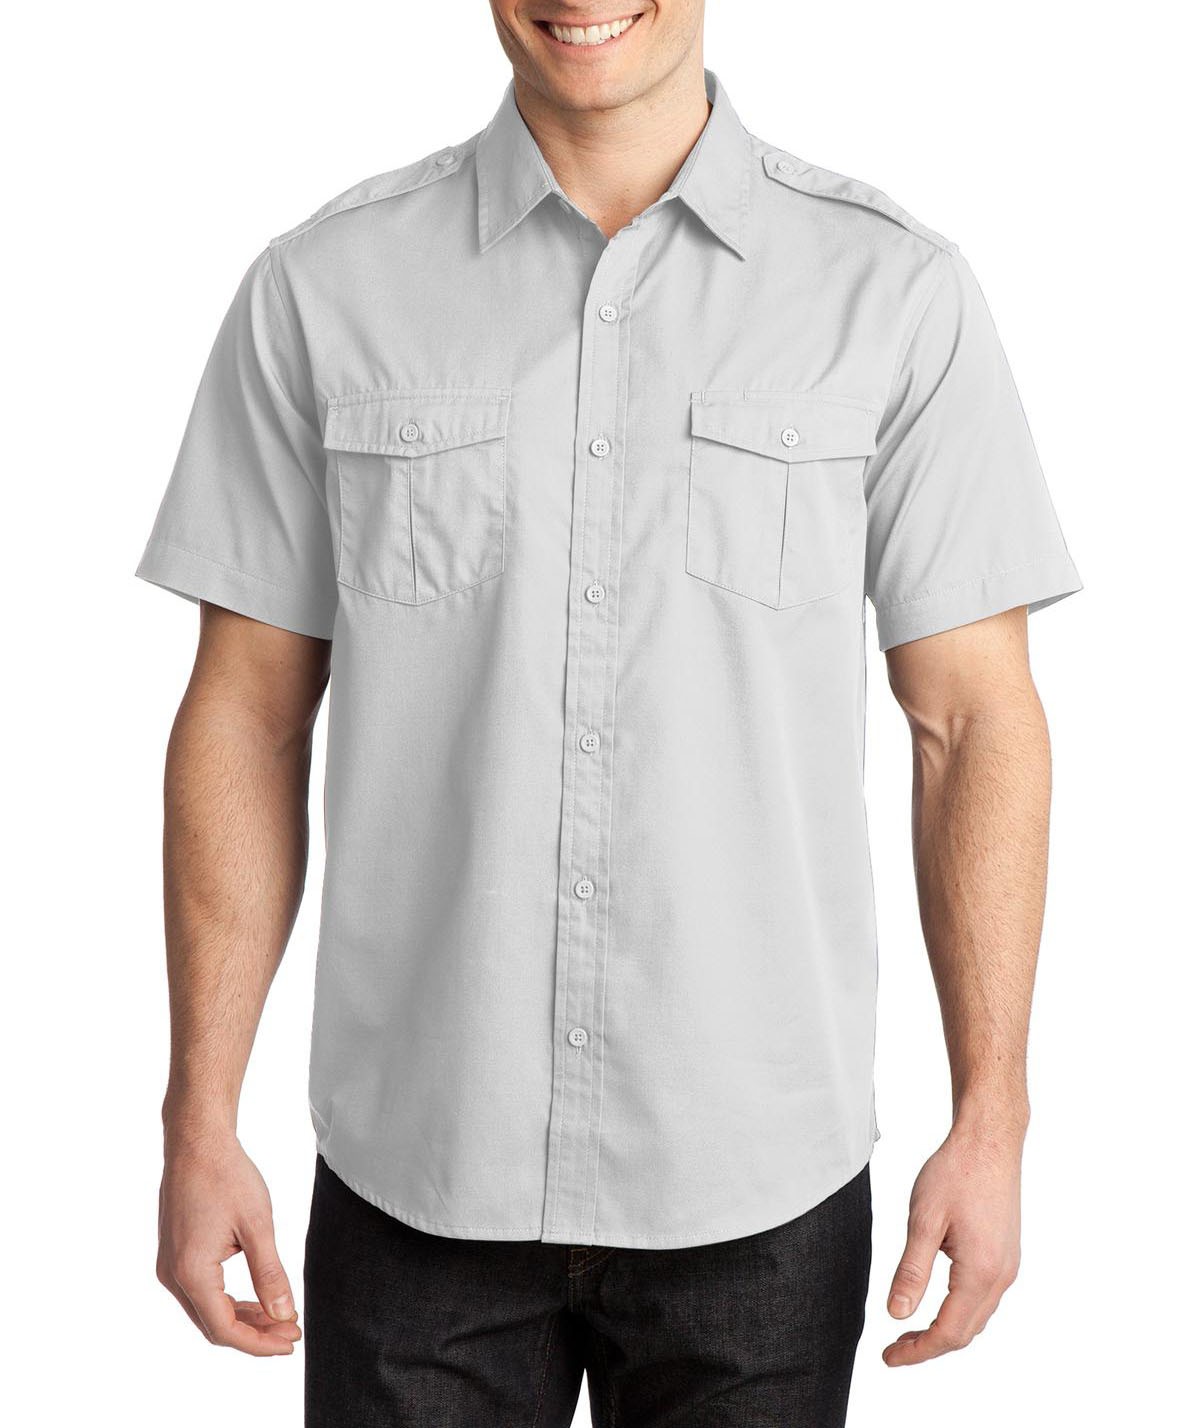 Port Camisa de manga corta militar, con dos bolsillos al frente y acabado S648 blanco - Camisas - HOMBRE